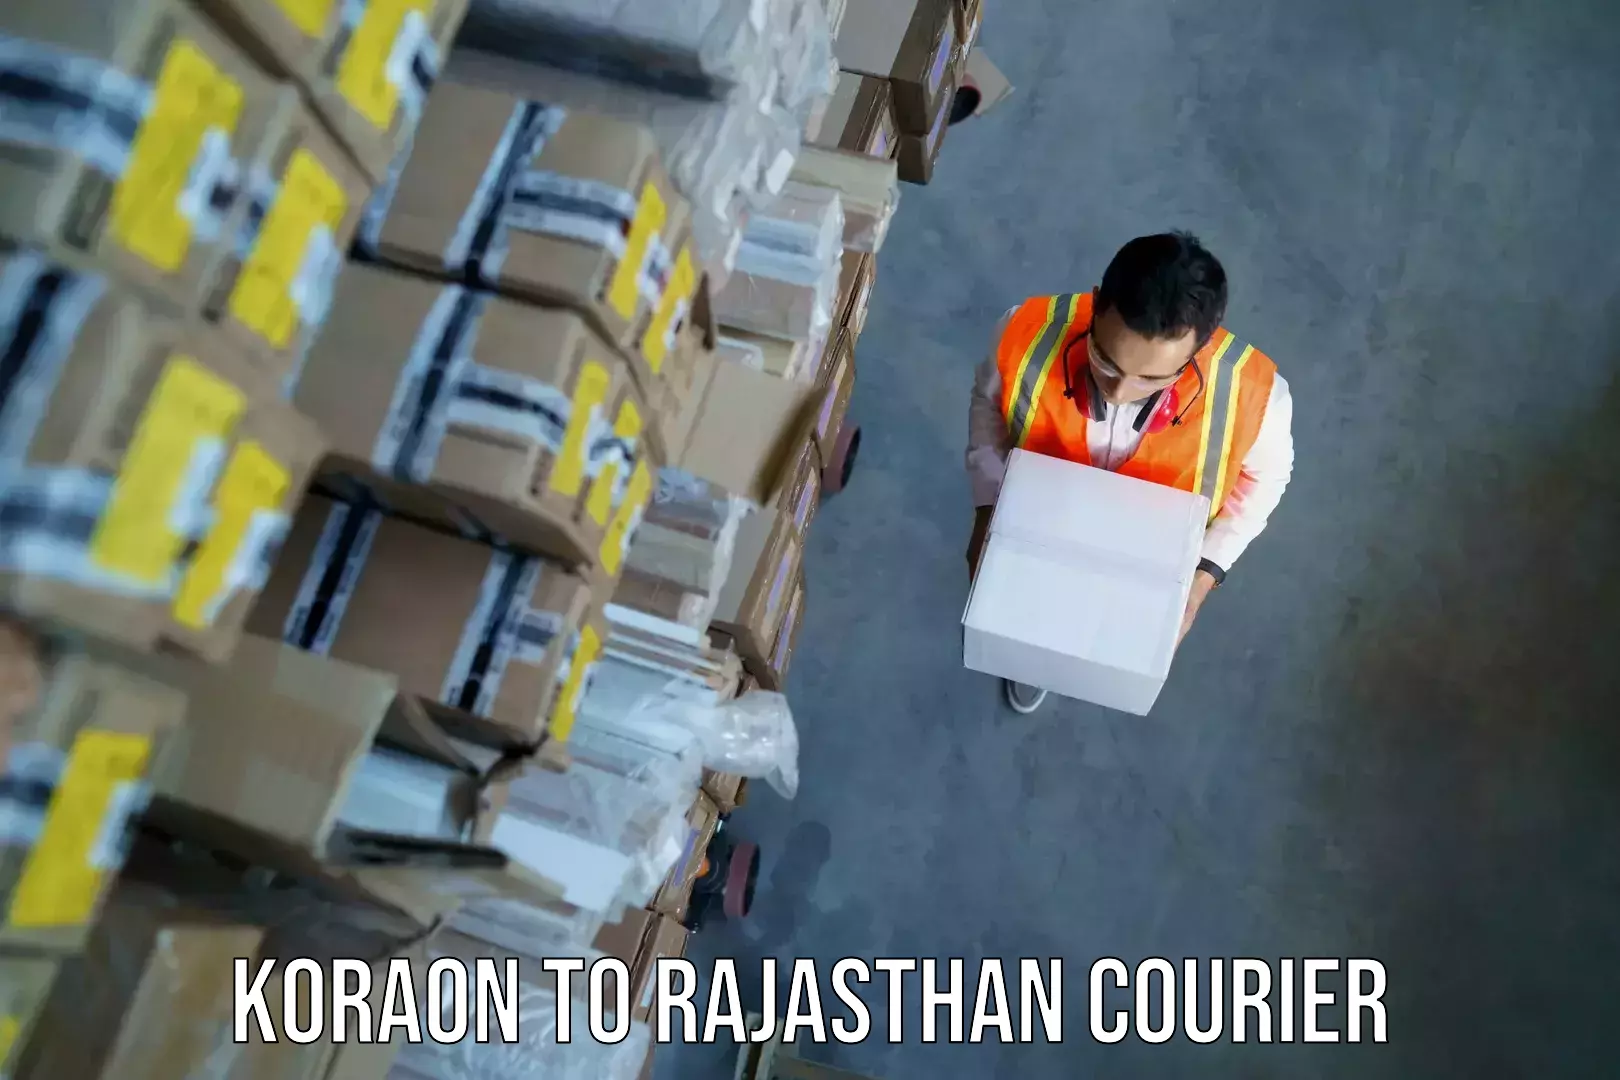 Baggage shipping experts Koraon to Rajasthan